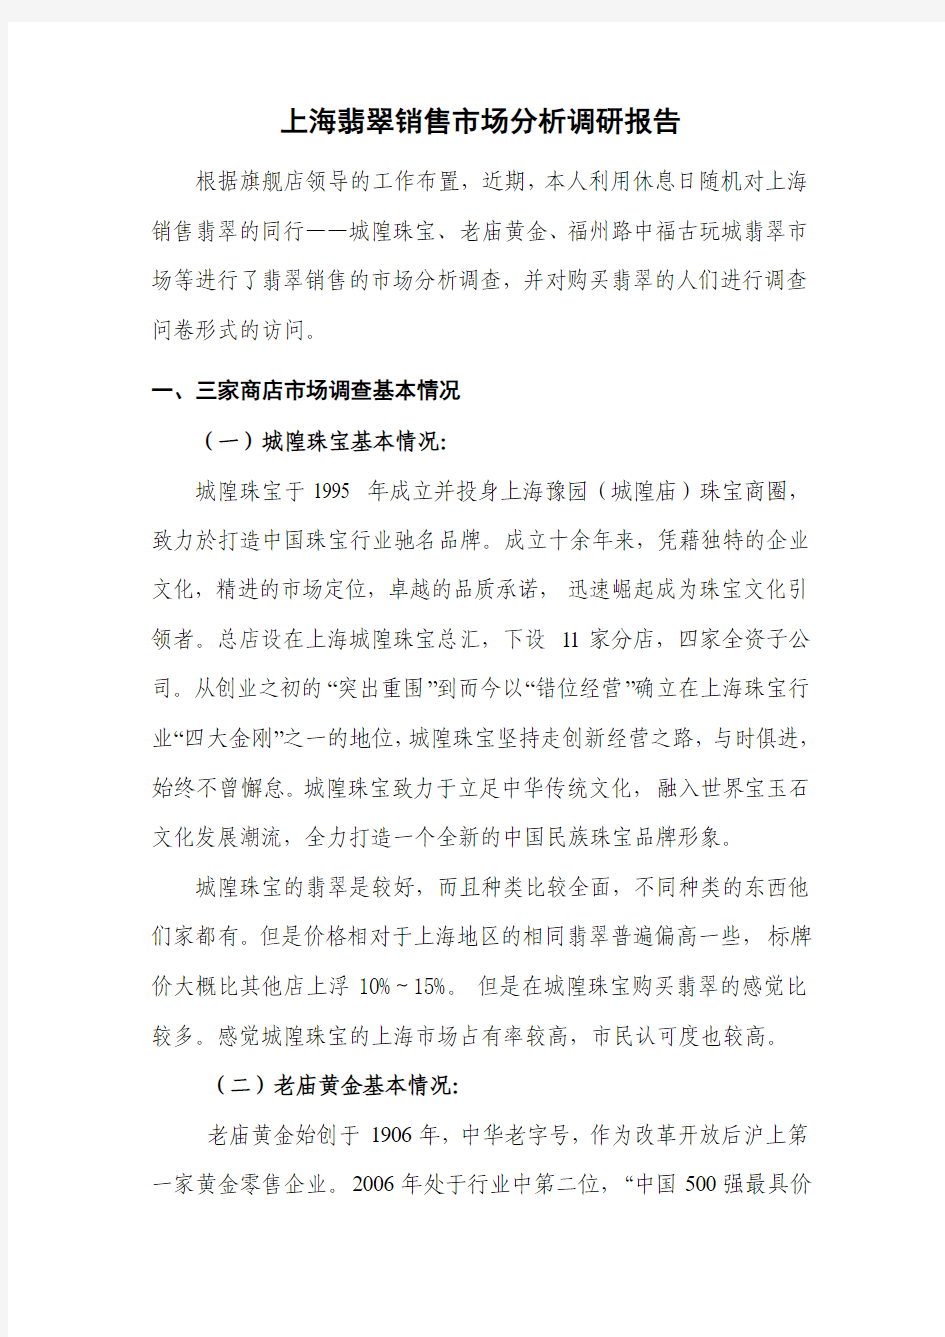 上海翡翠销售市场分析调研报告